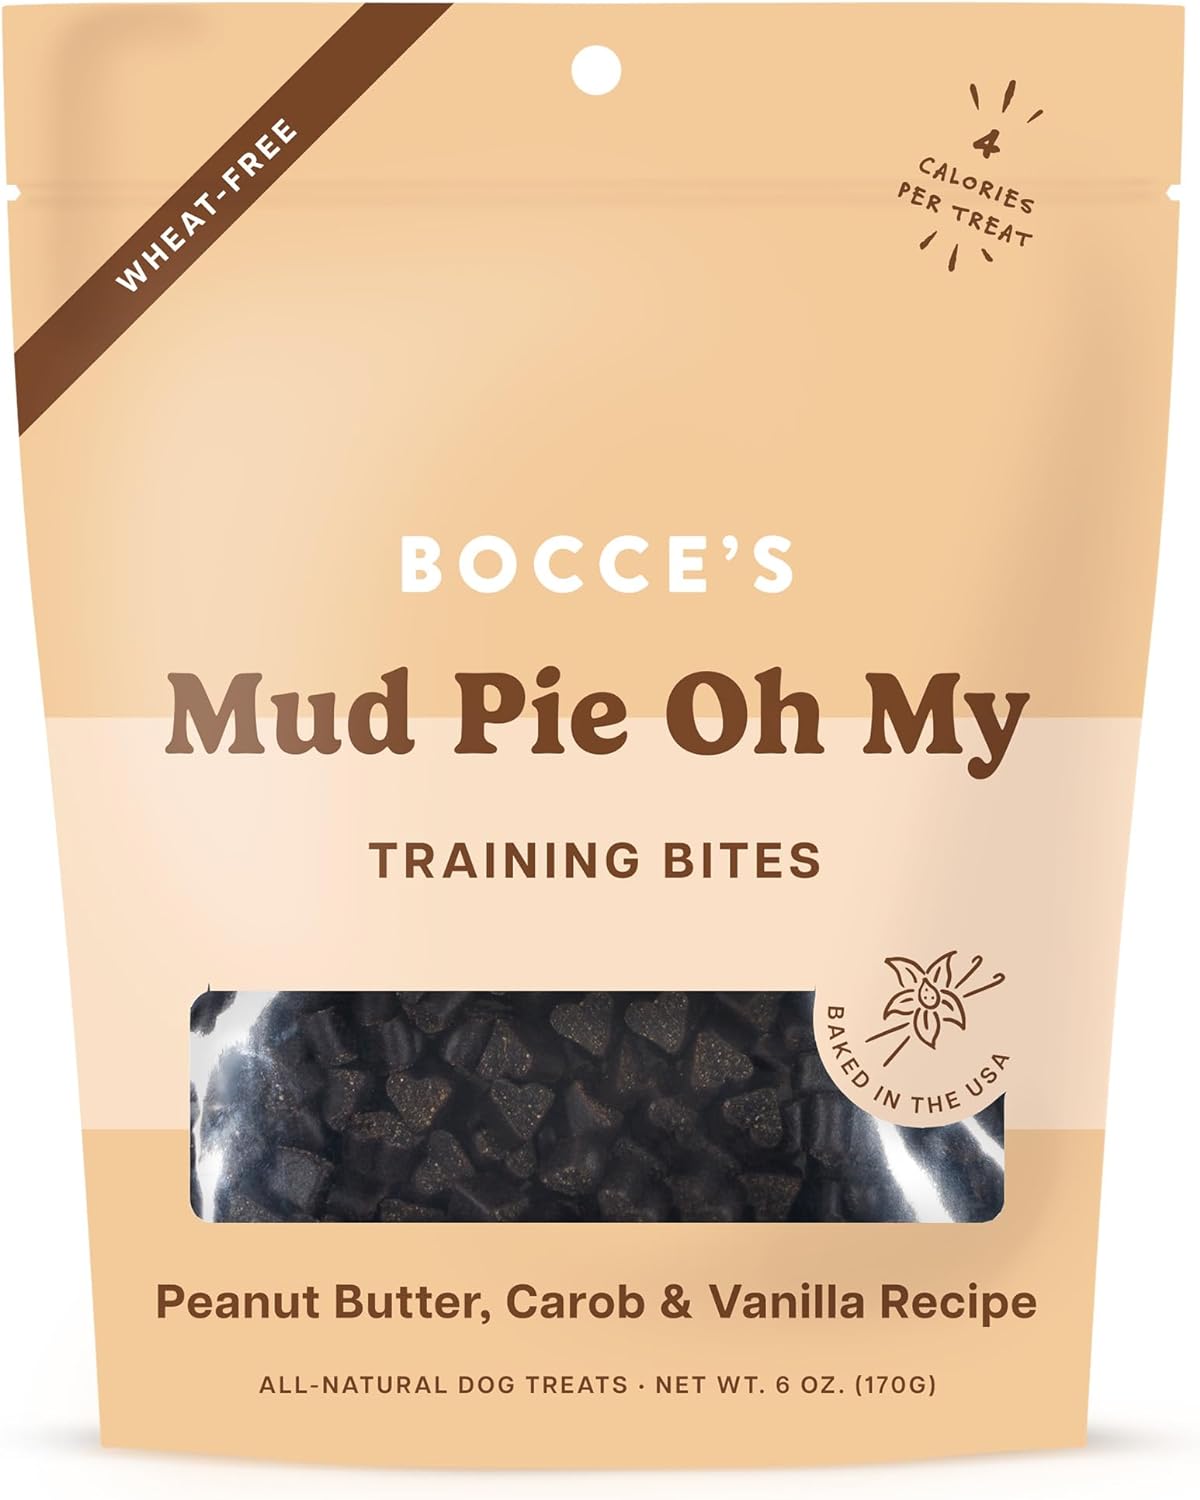 Bocce's Training Bites Mud Pie Oh My PB & Carob & Vanilla 6 oz.